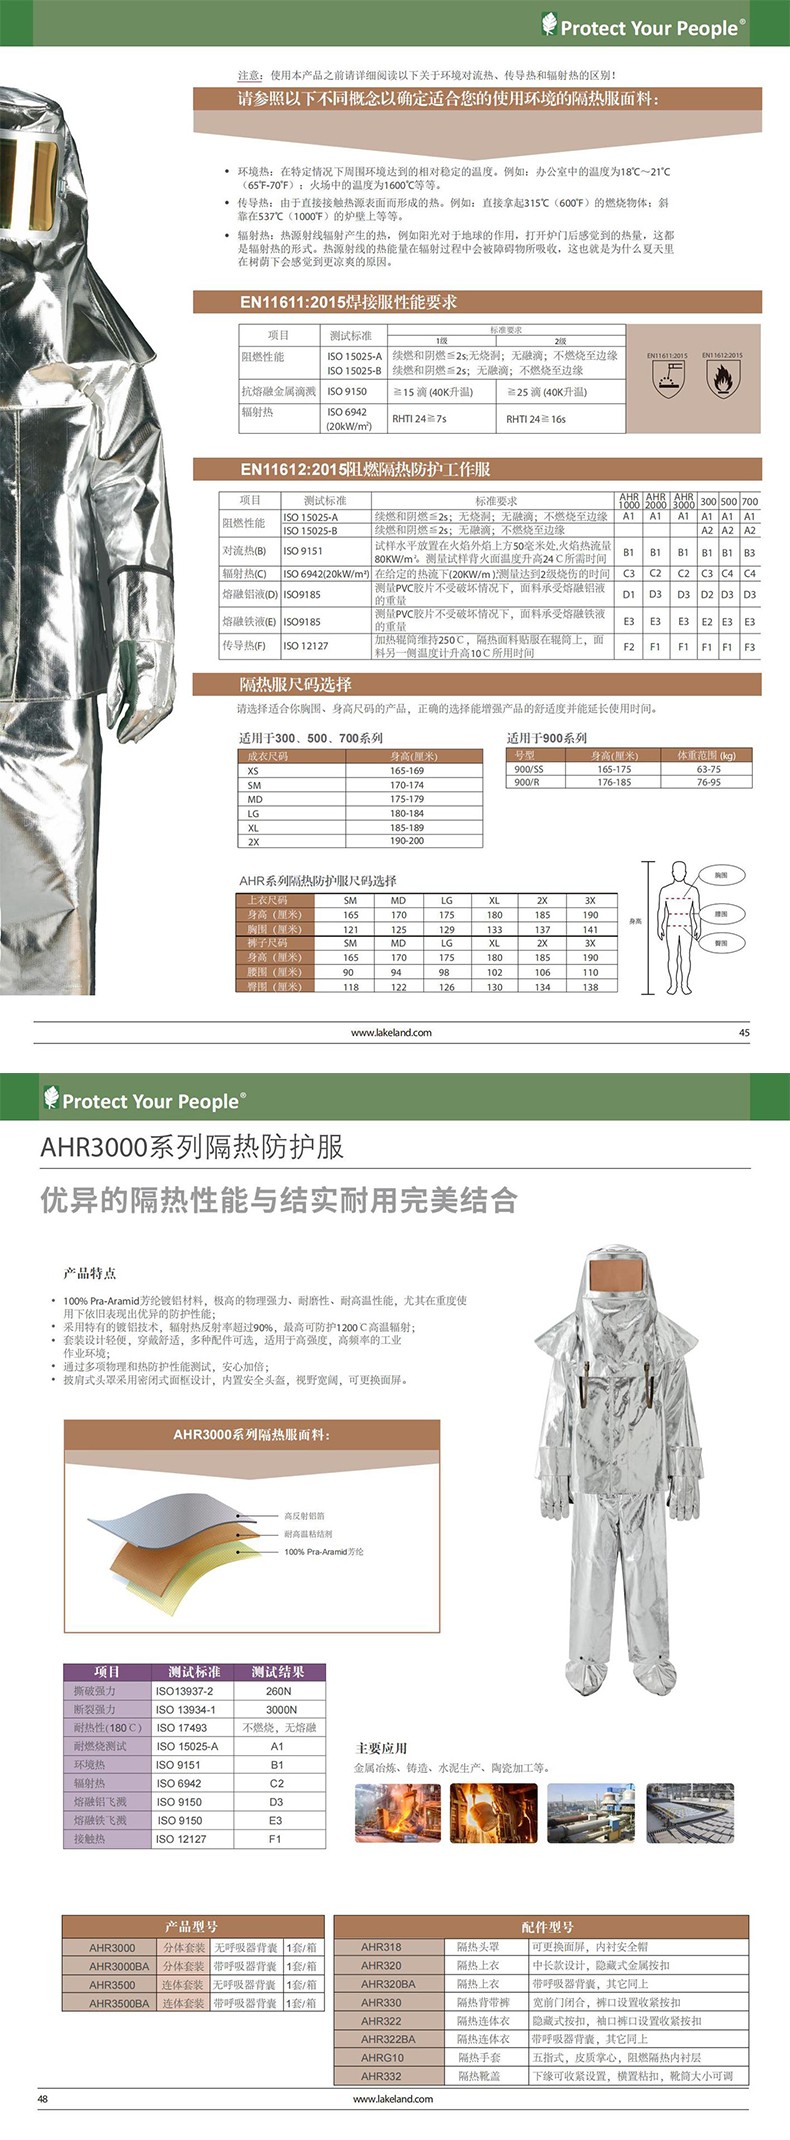 雷克兰AHR3500BA连体式带背囊隔热服套装图片